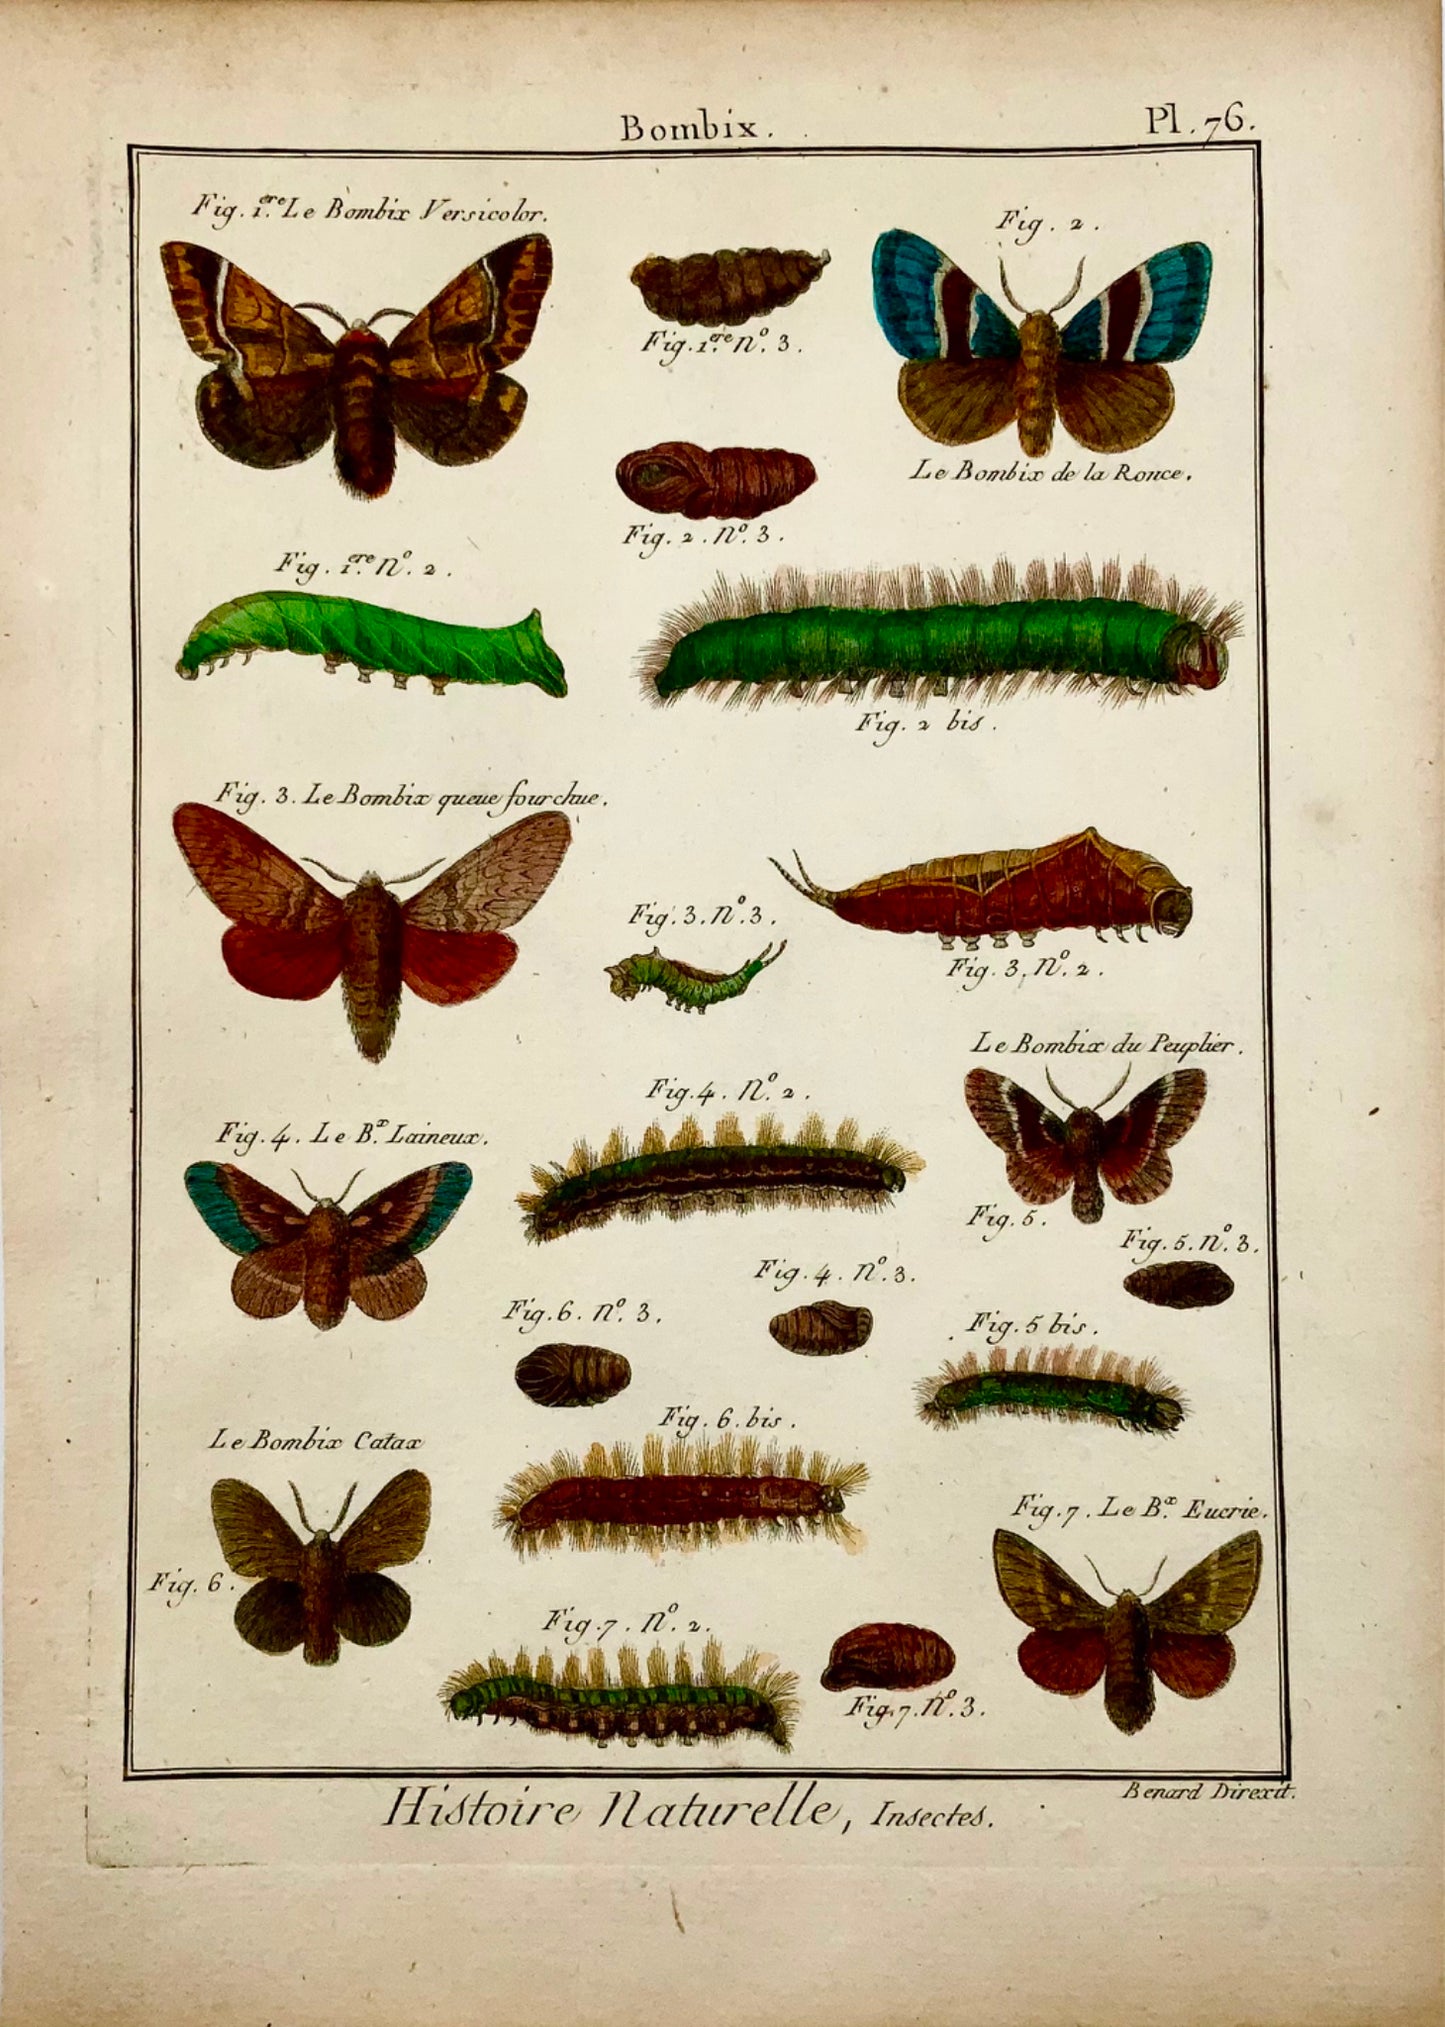 1794 Latreille; Gravure sur cuivre in-quarto manuelle Papillons - Bombix